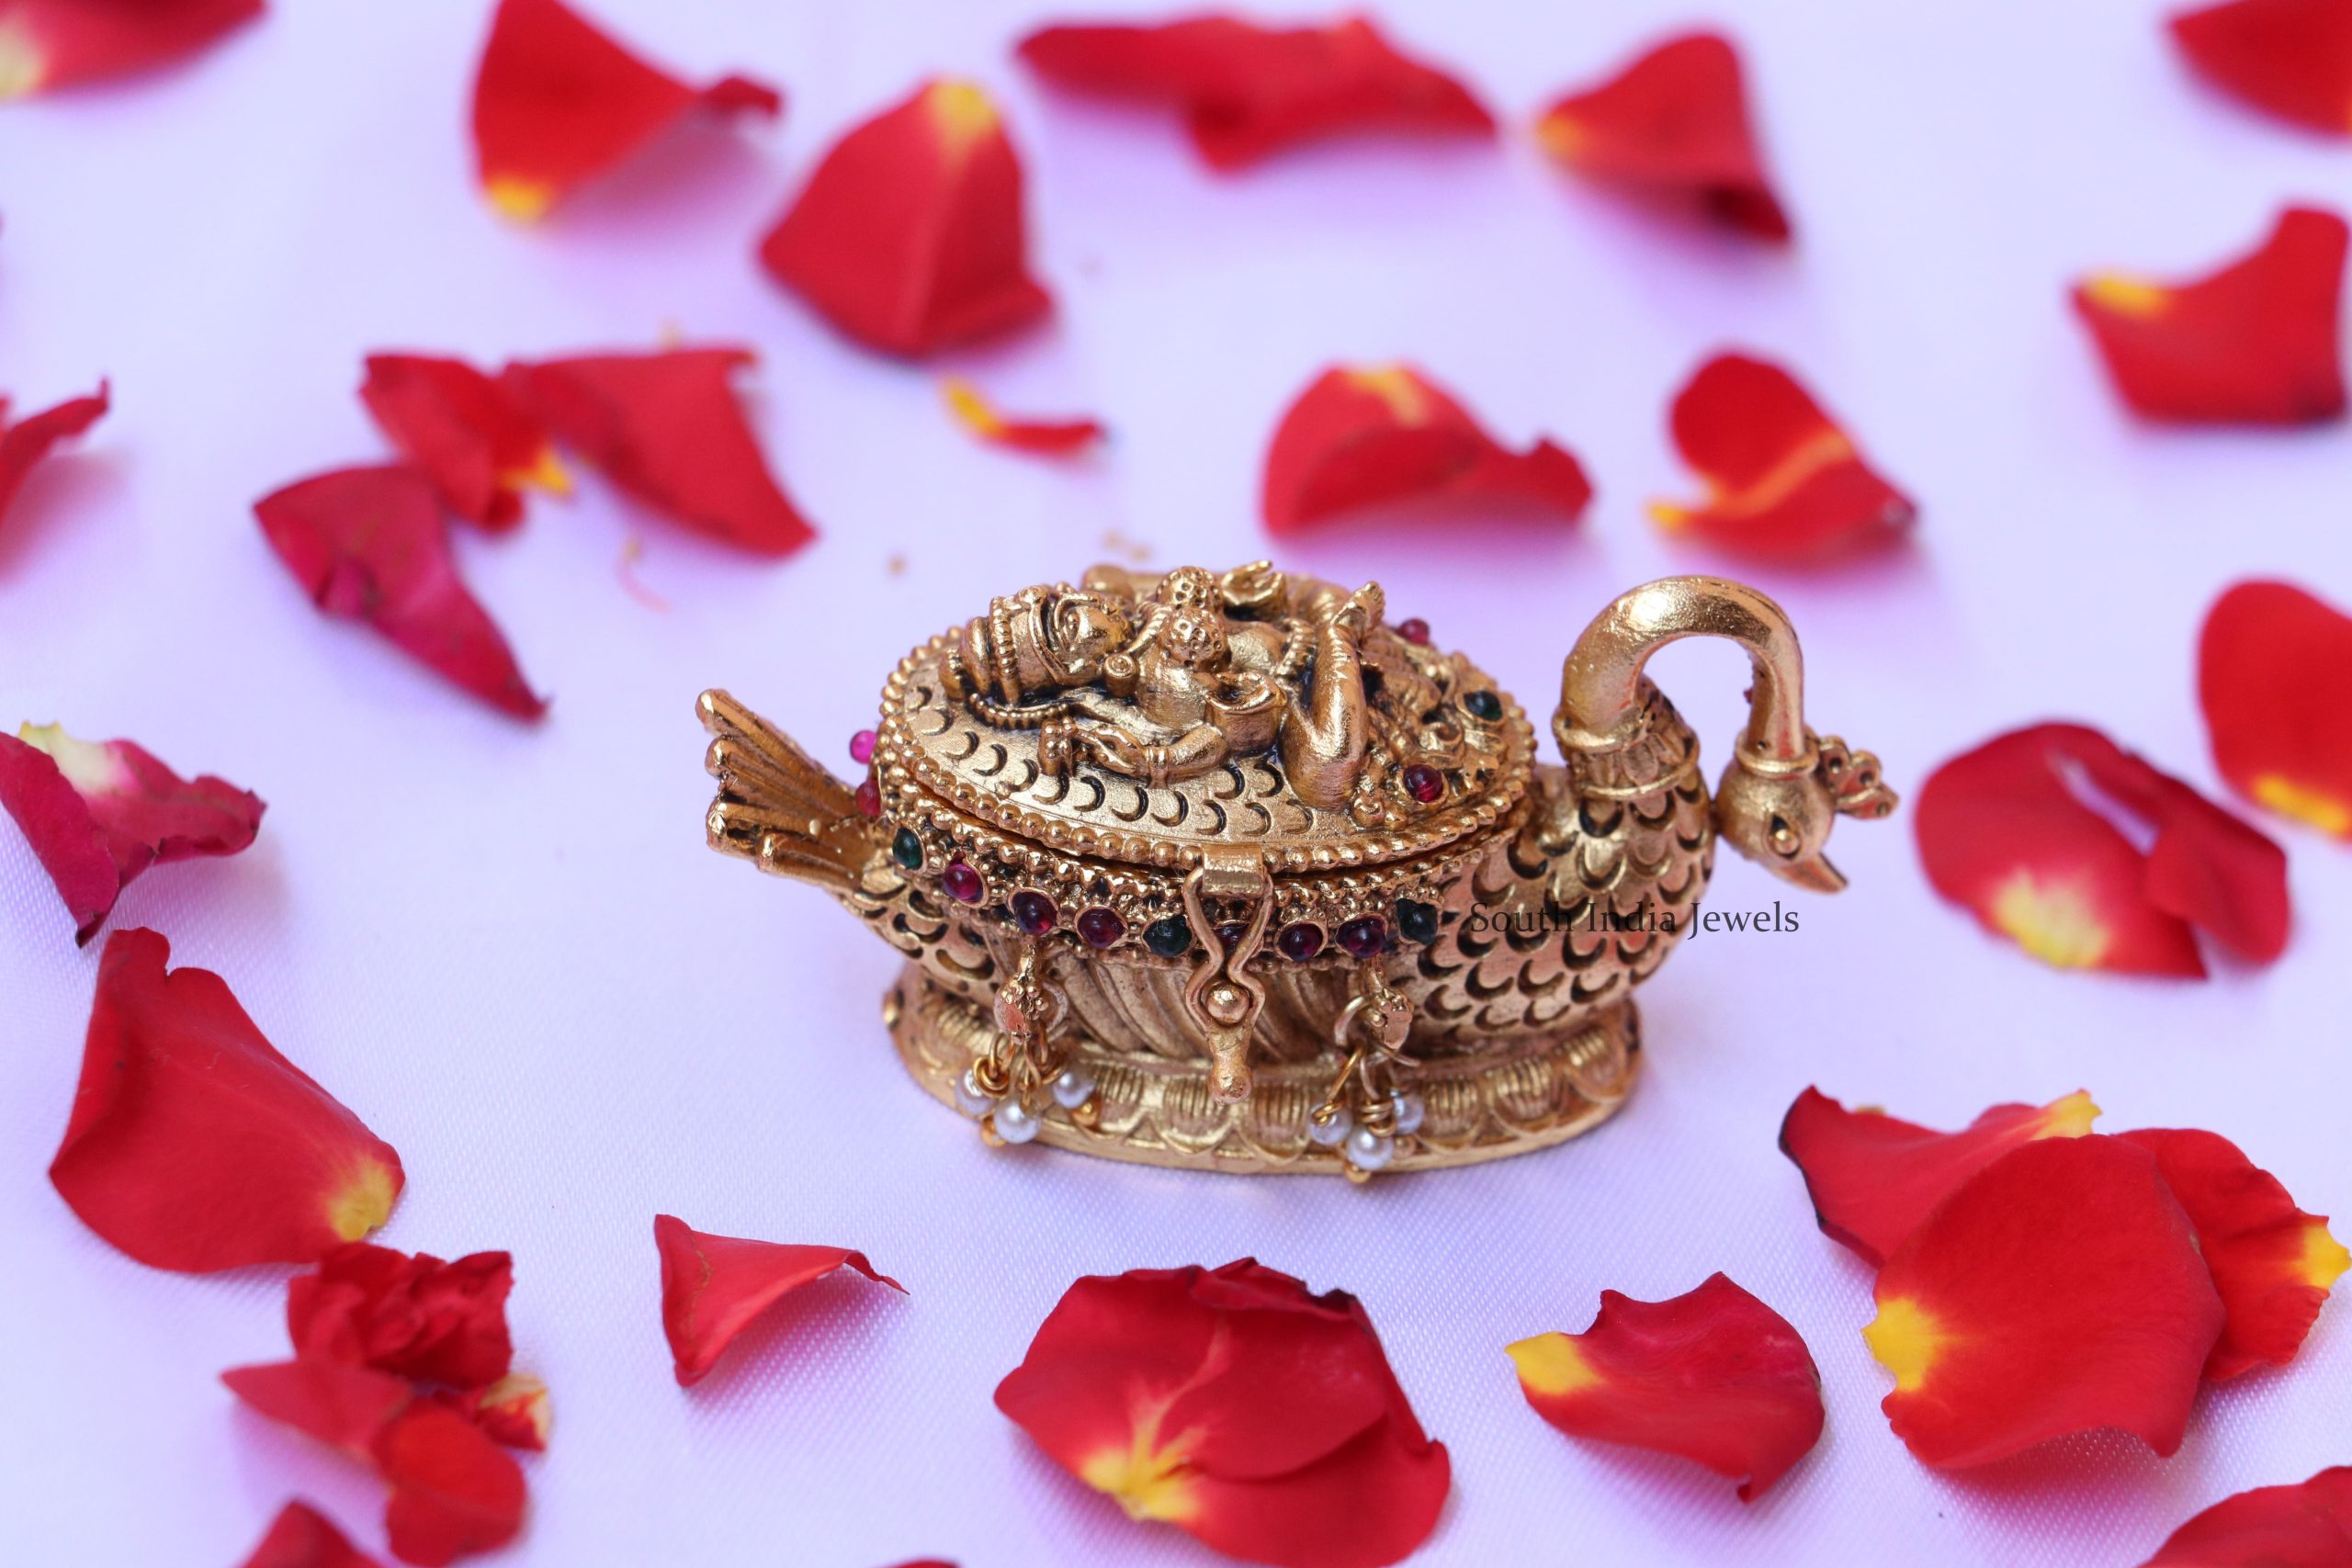 Exquisite Lakshmi Design Sindoor Box